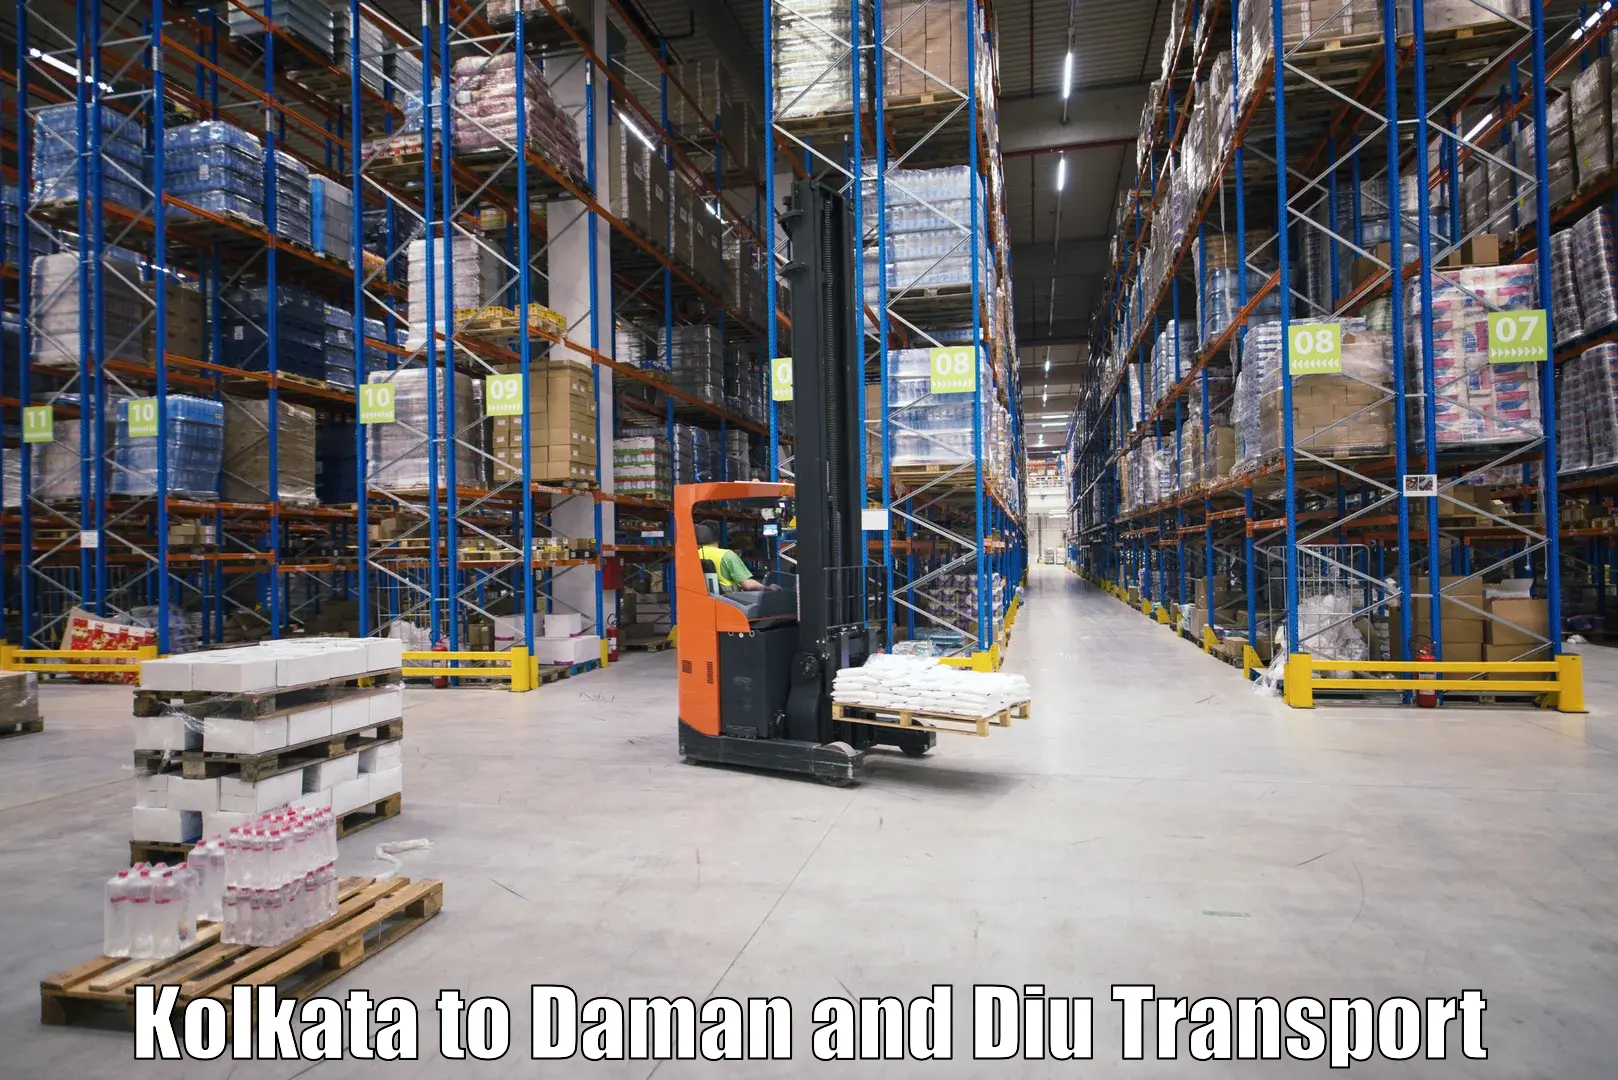 Transportation services Kolkata to Daman and Diu